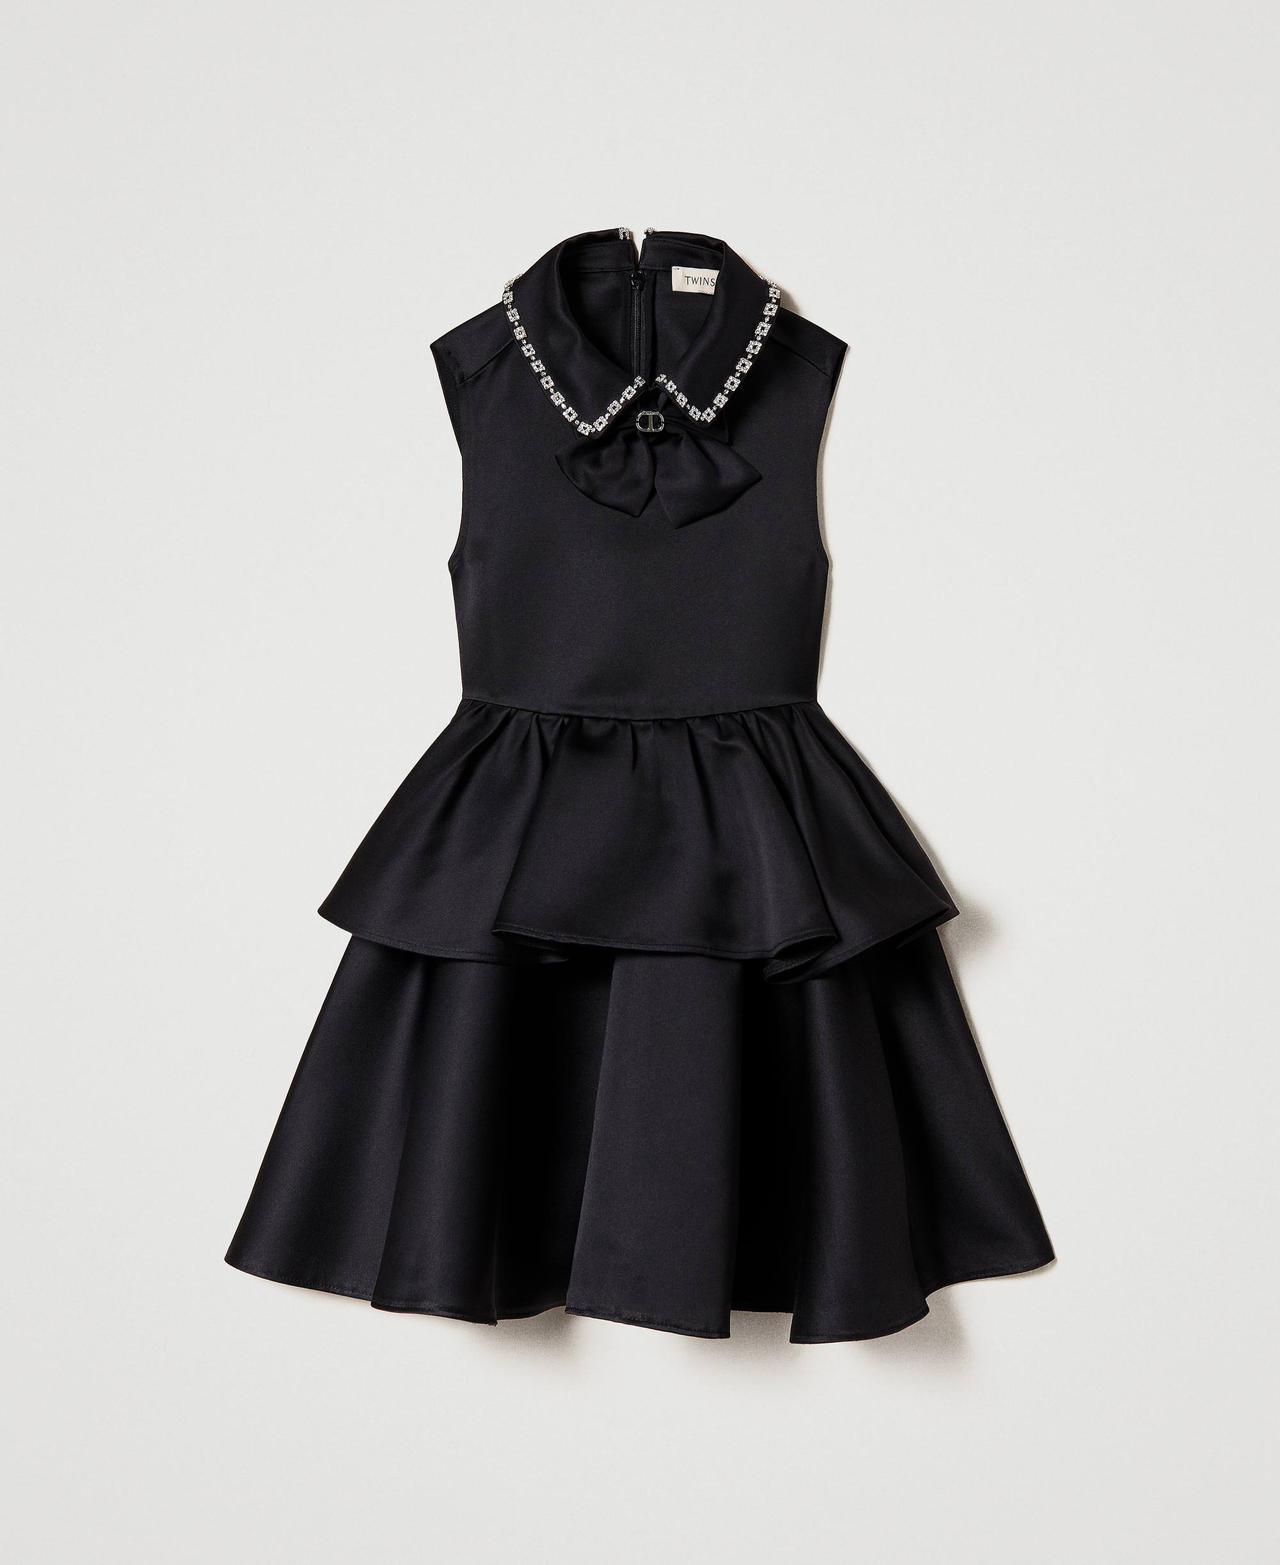 Short duchesse dress with bow Black Girl 232GJ2213-0S